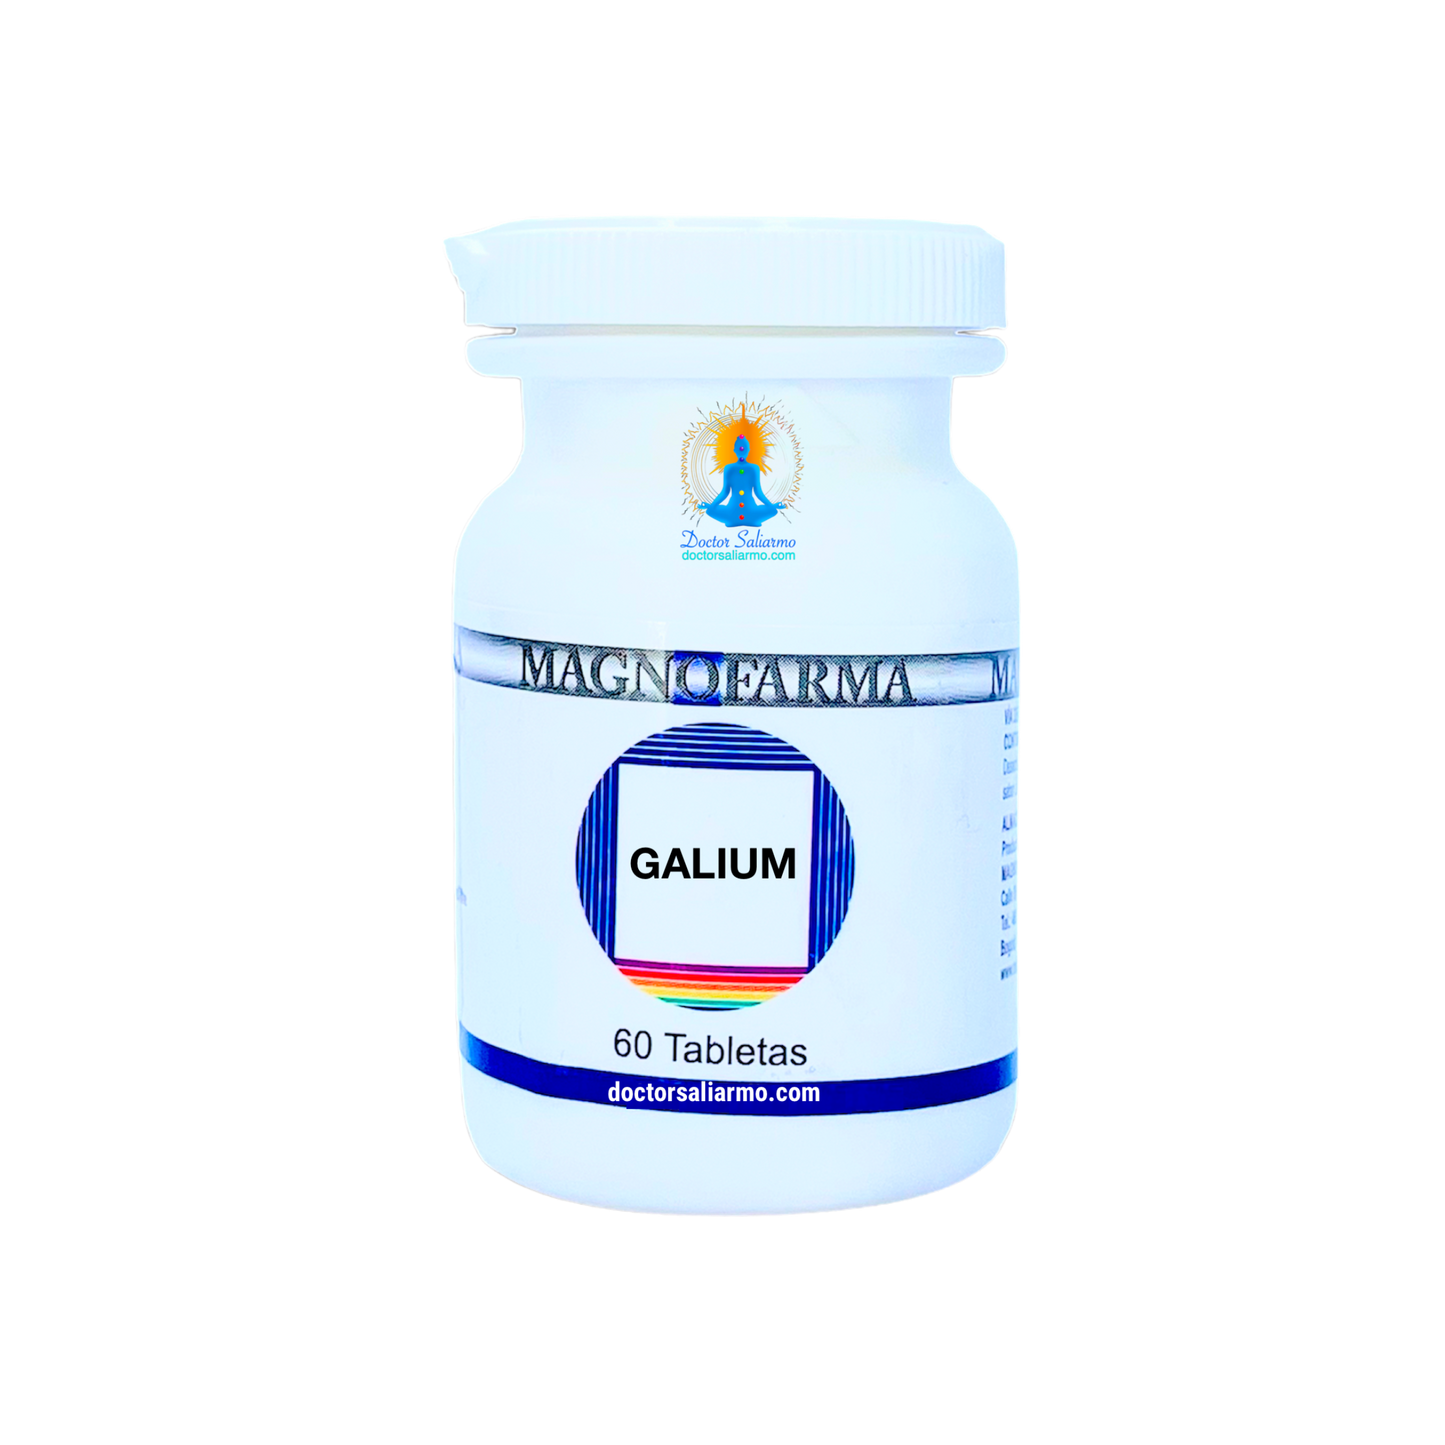 Galium indicado para estimular los mecanismos de defensa inespecificos, principalmente en caso de enfermedades crónicas relacionadas con el sistema inmunologico. Indicado en caninos, felinos, bovinos y equinos.